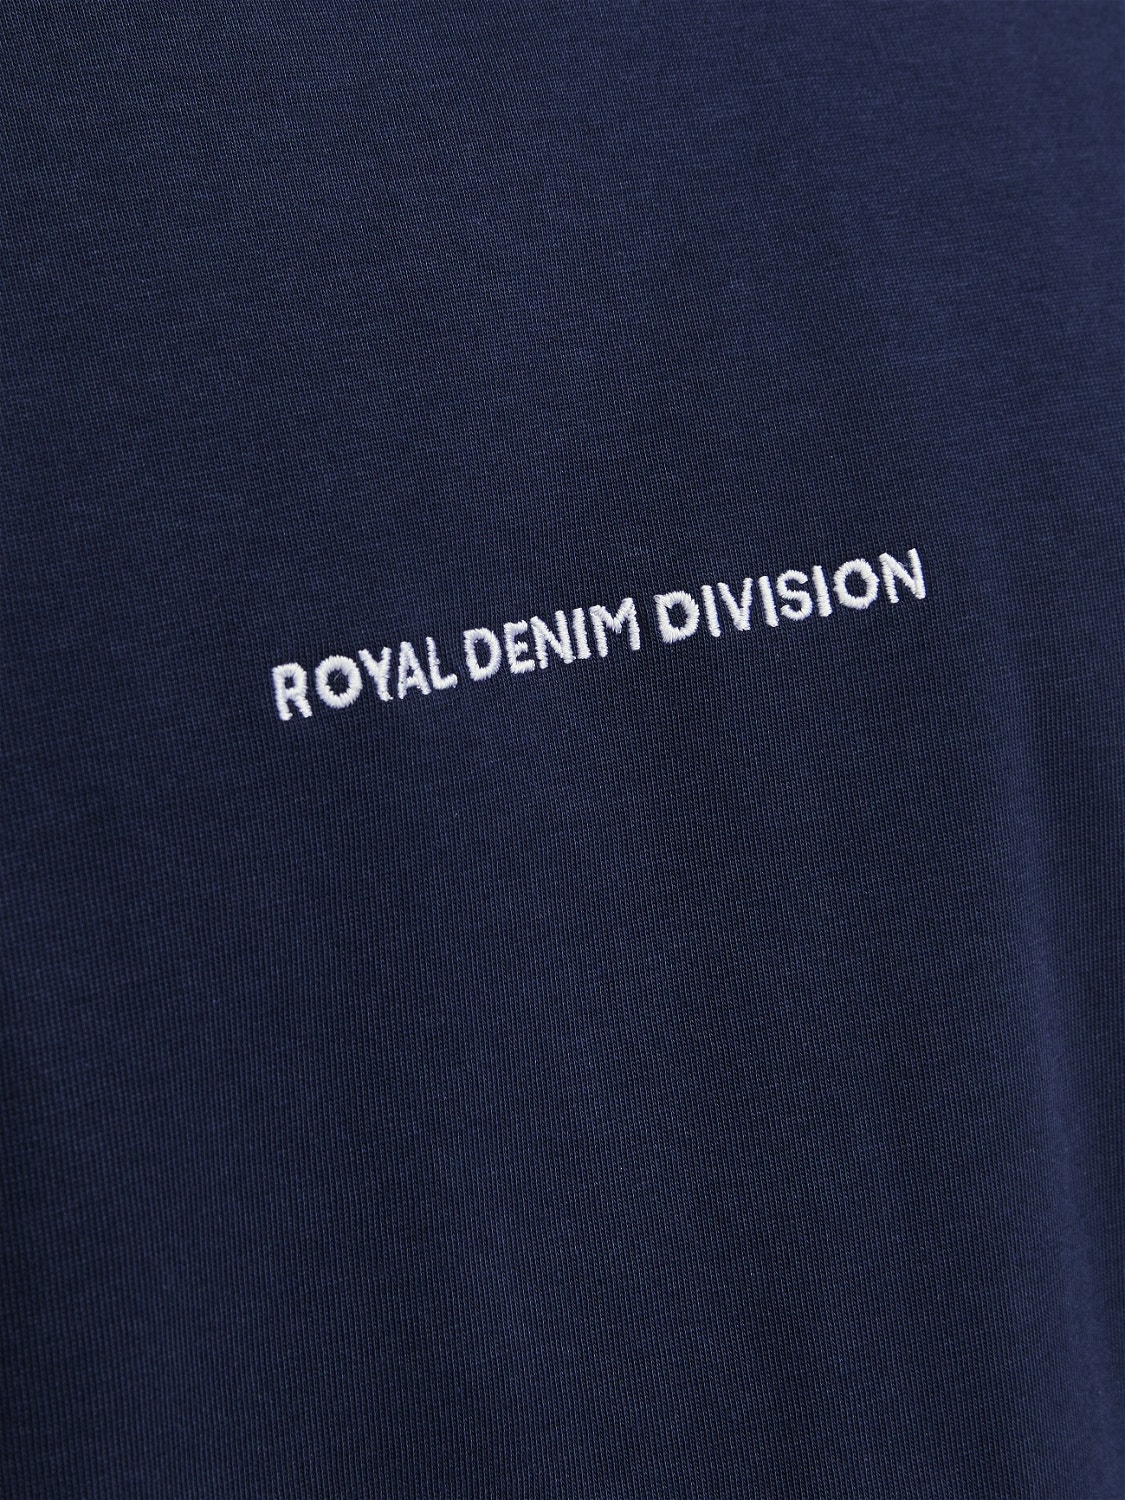 Jack & Jones RDD Gedruckt Rundhals T-shirt -Navy Blazer - 12253164